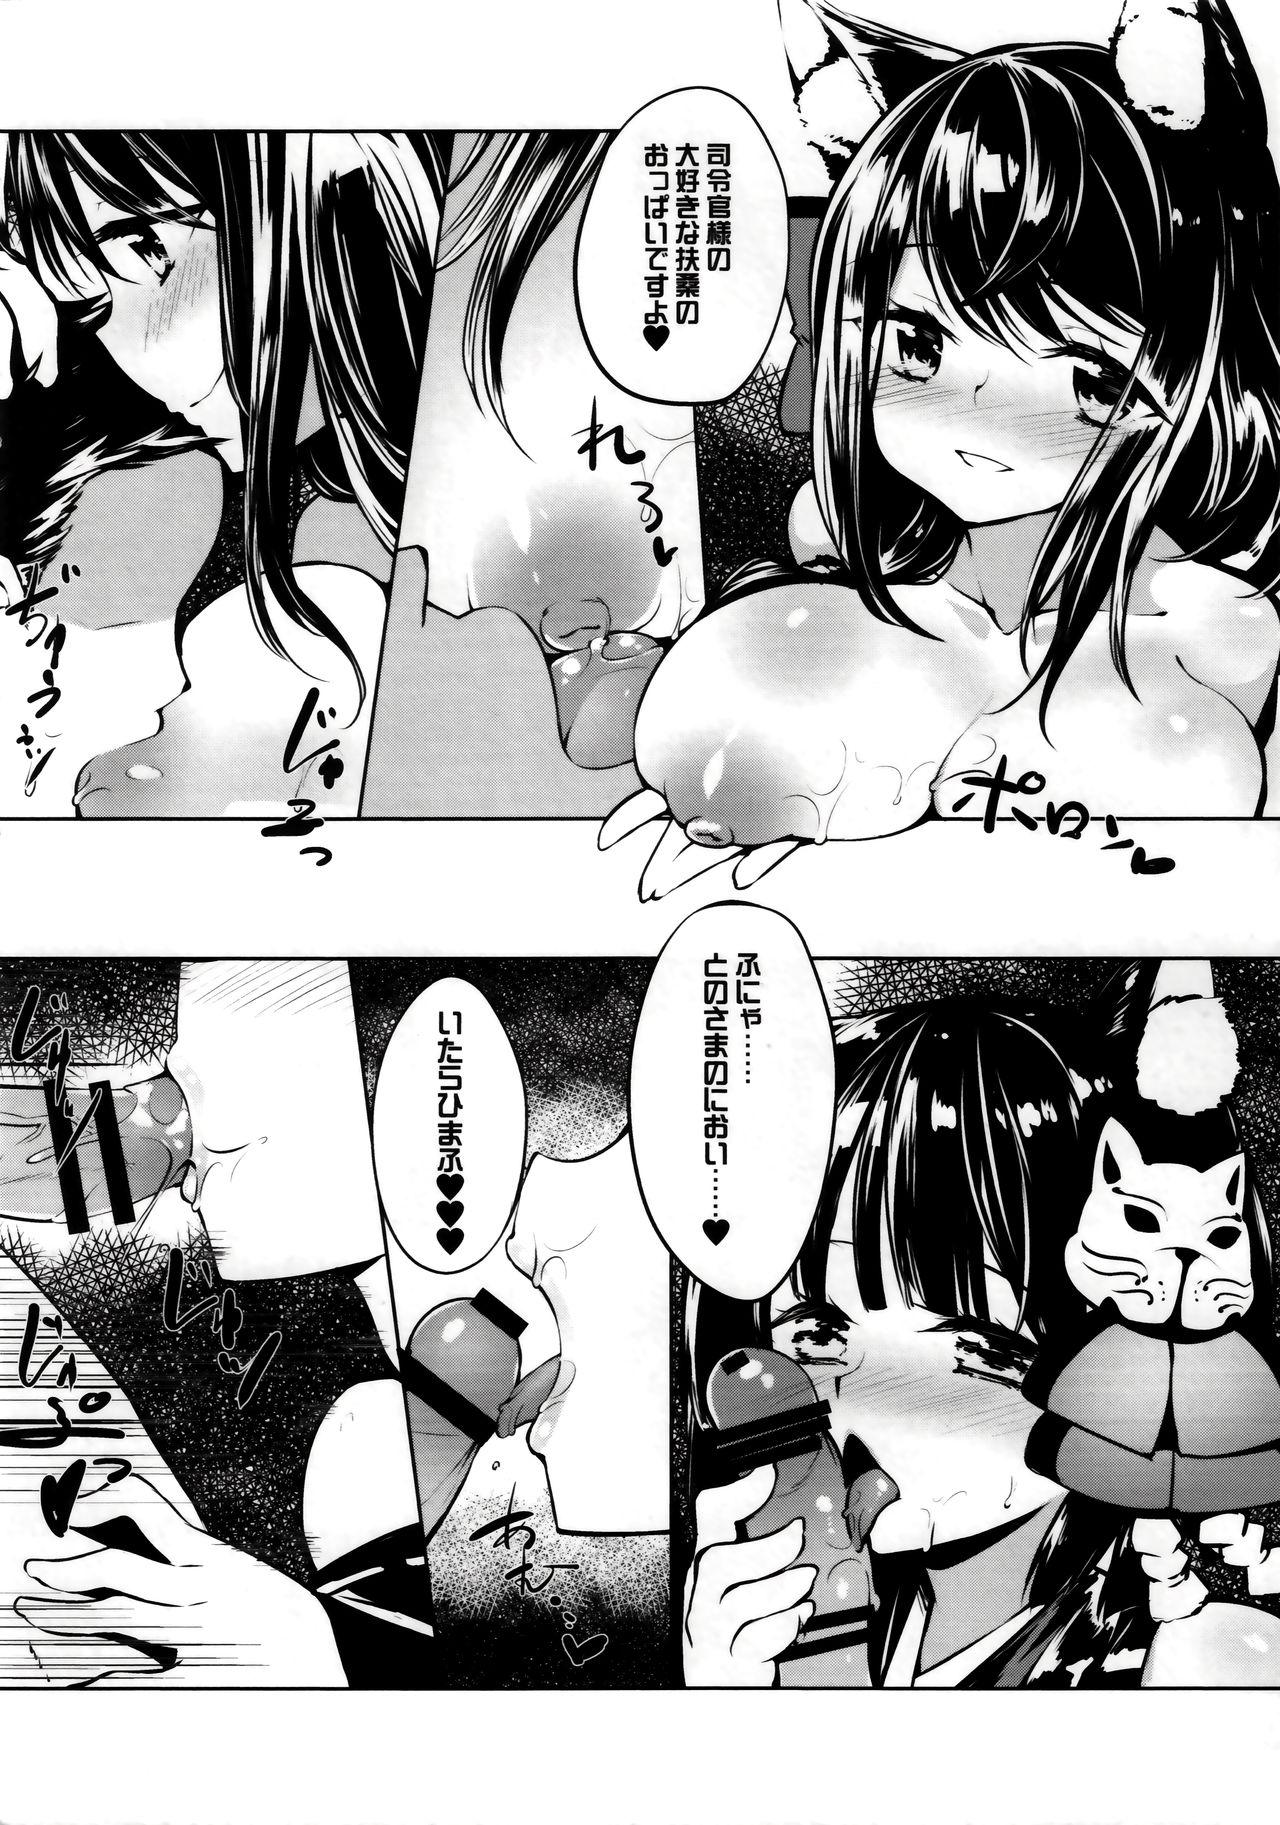 Pussy To Mouth Azur Lovers Fusou & Yamashiro vol. 01 - Azur lane Bucetinha - Page 6